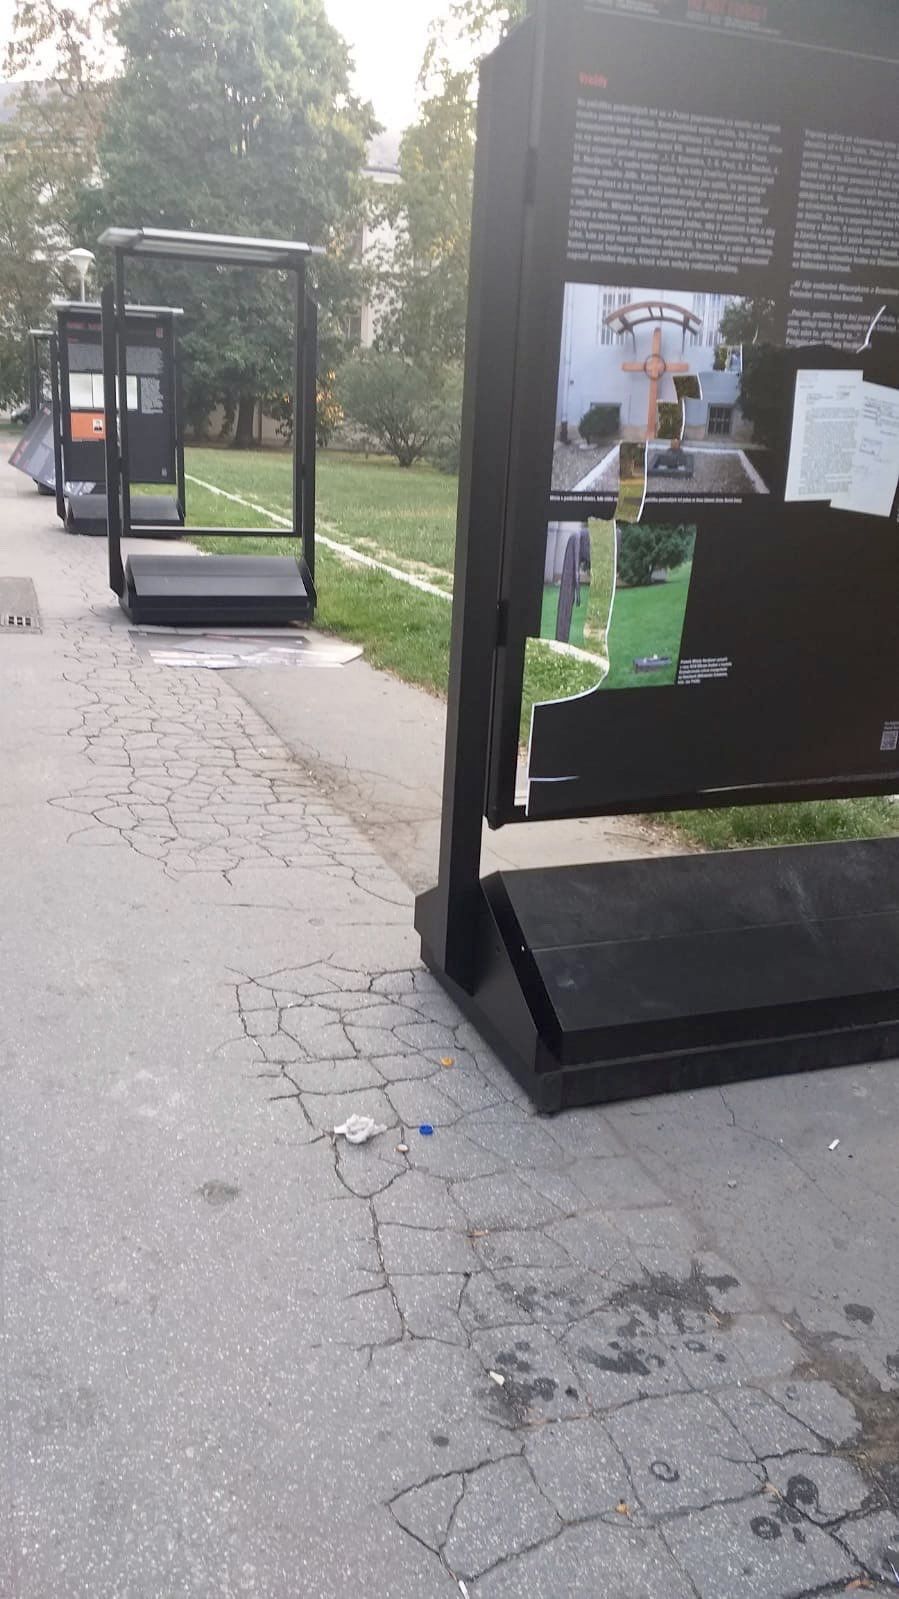 Neznámý pachatel poničil venkovní výstavu o Miladě Horákové. Po původci škod policisté pátrají.